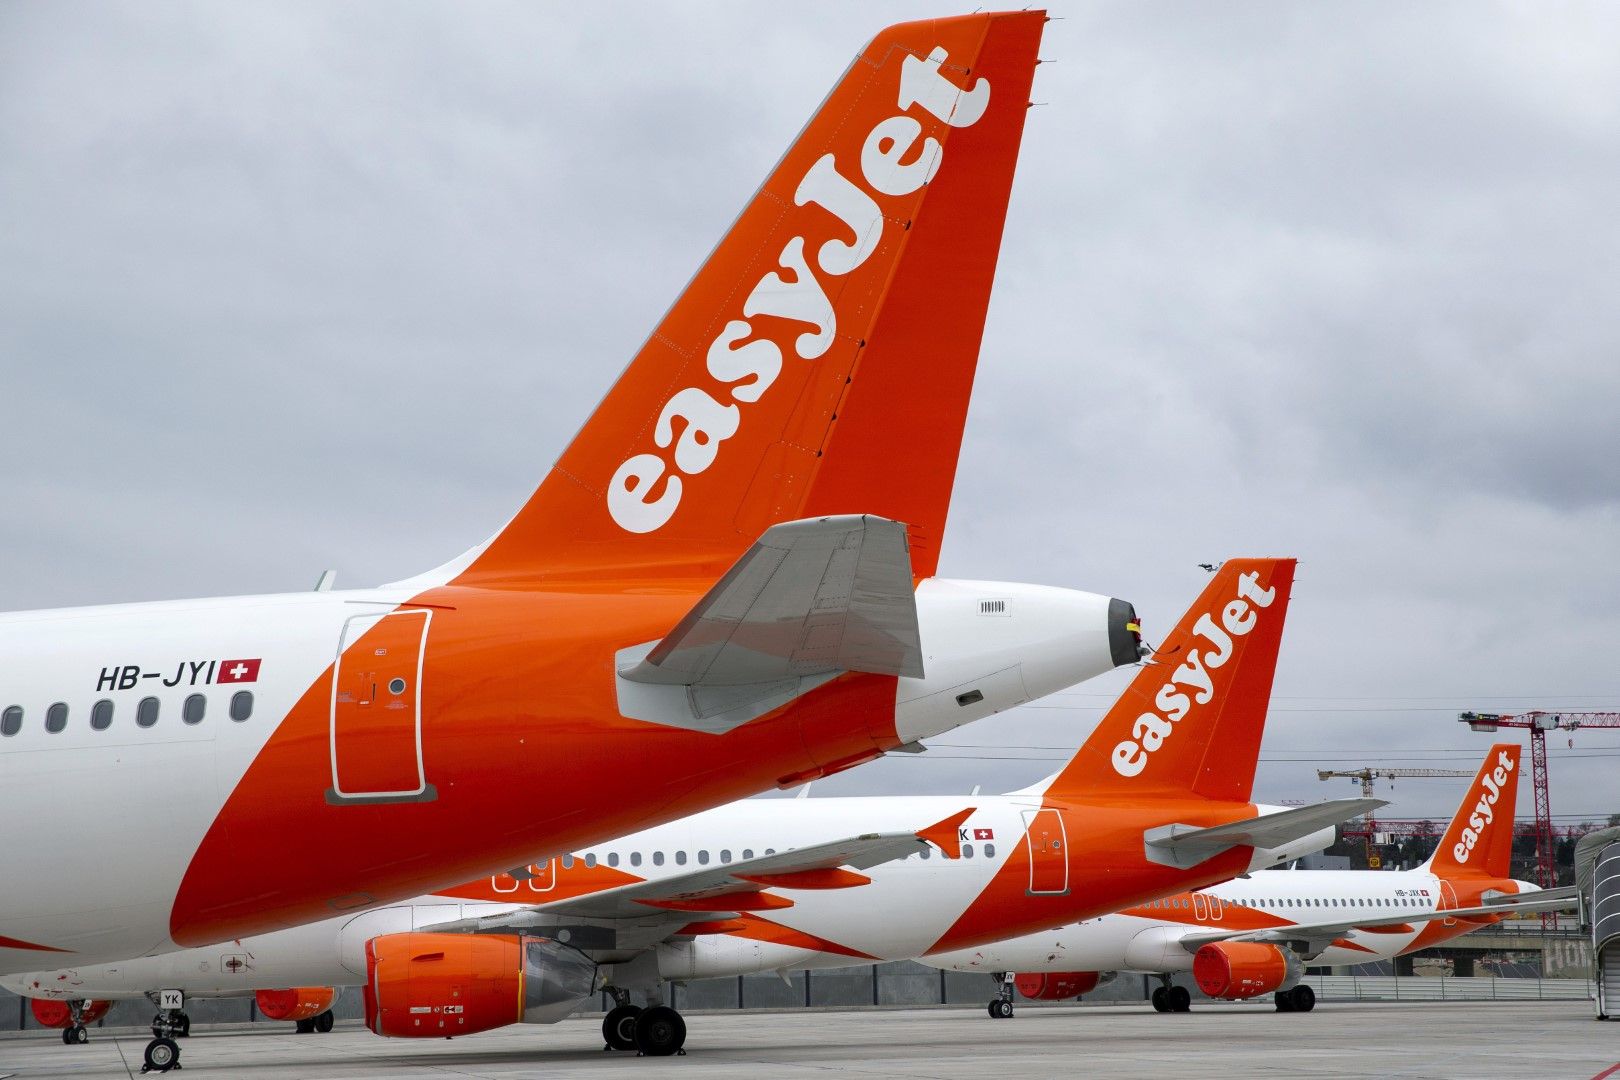 След март много самолети на EasyJet останаха приземени по летищата (като тези на снимката - на летището в Женева на 30 март), много други бяха продадени